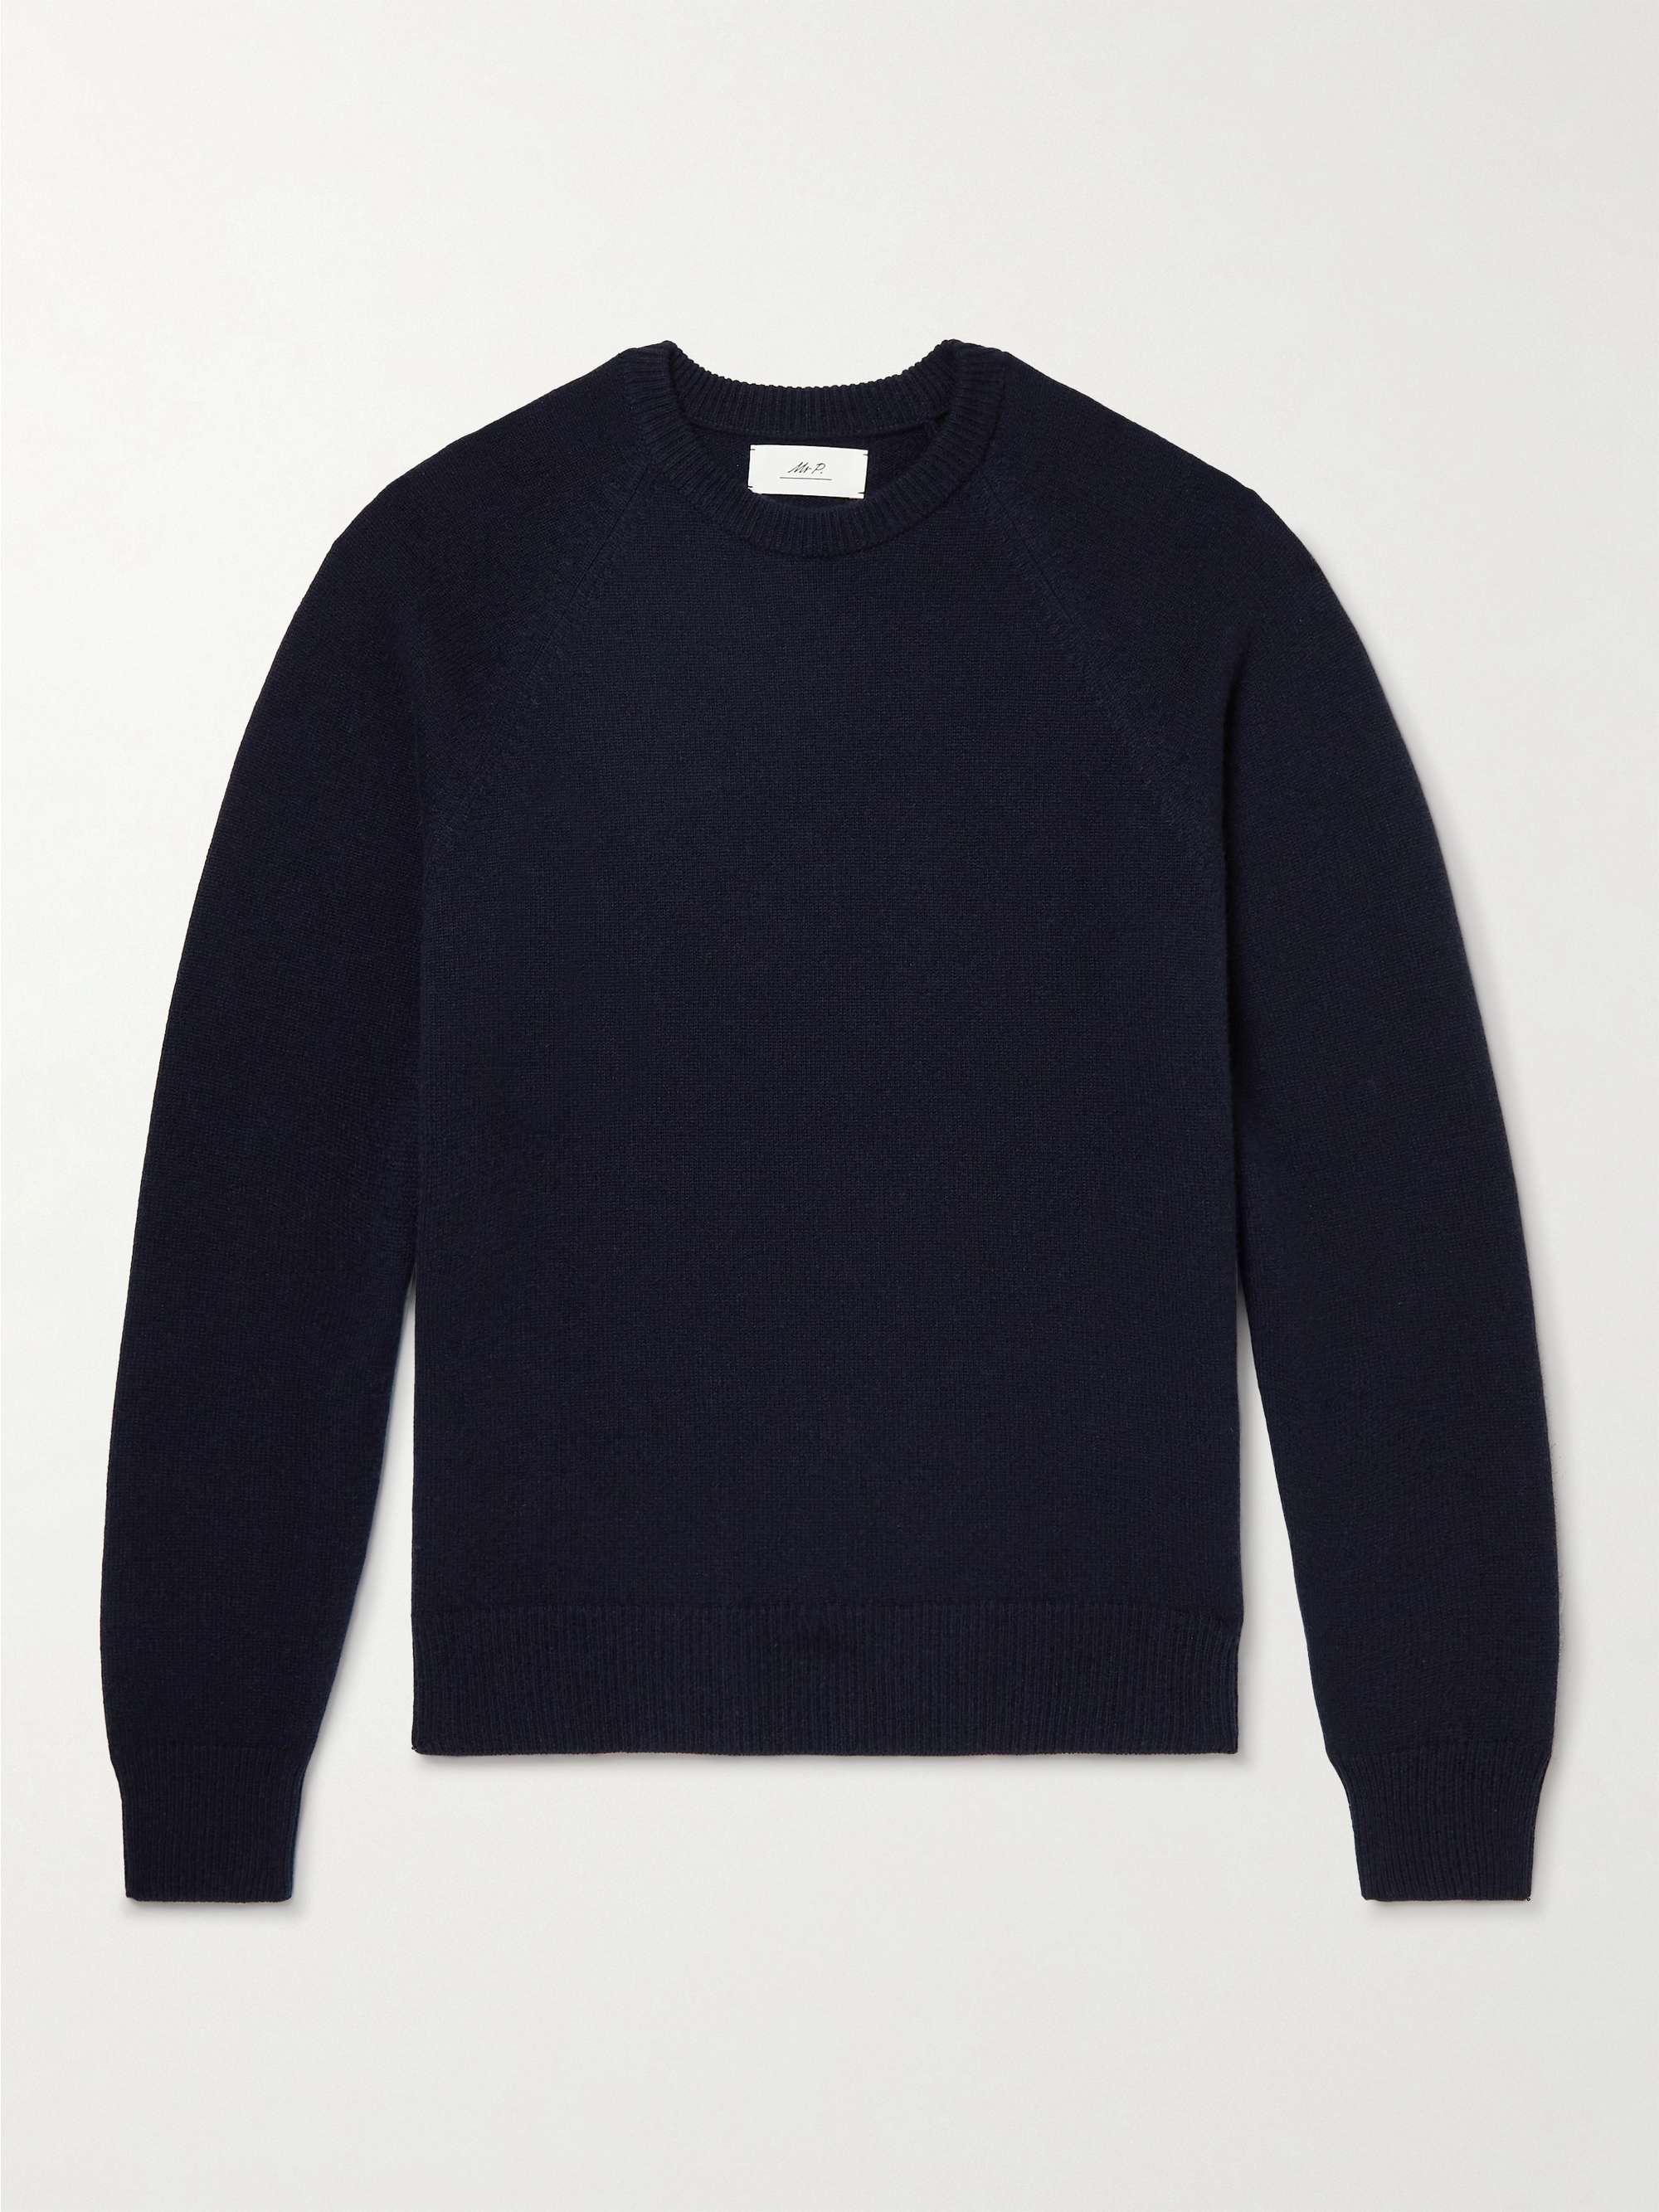 MR P. Knitted Raglan Cashmere Sweatshirt